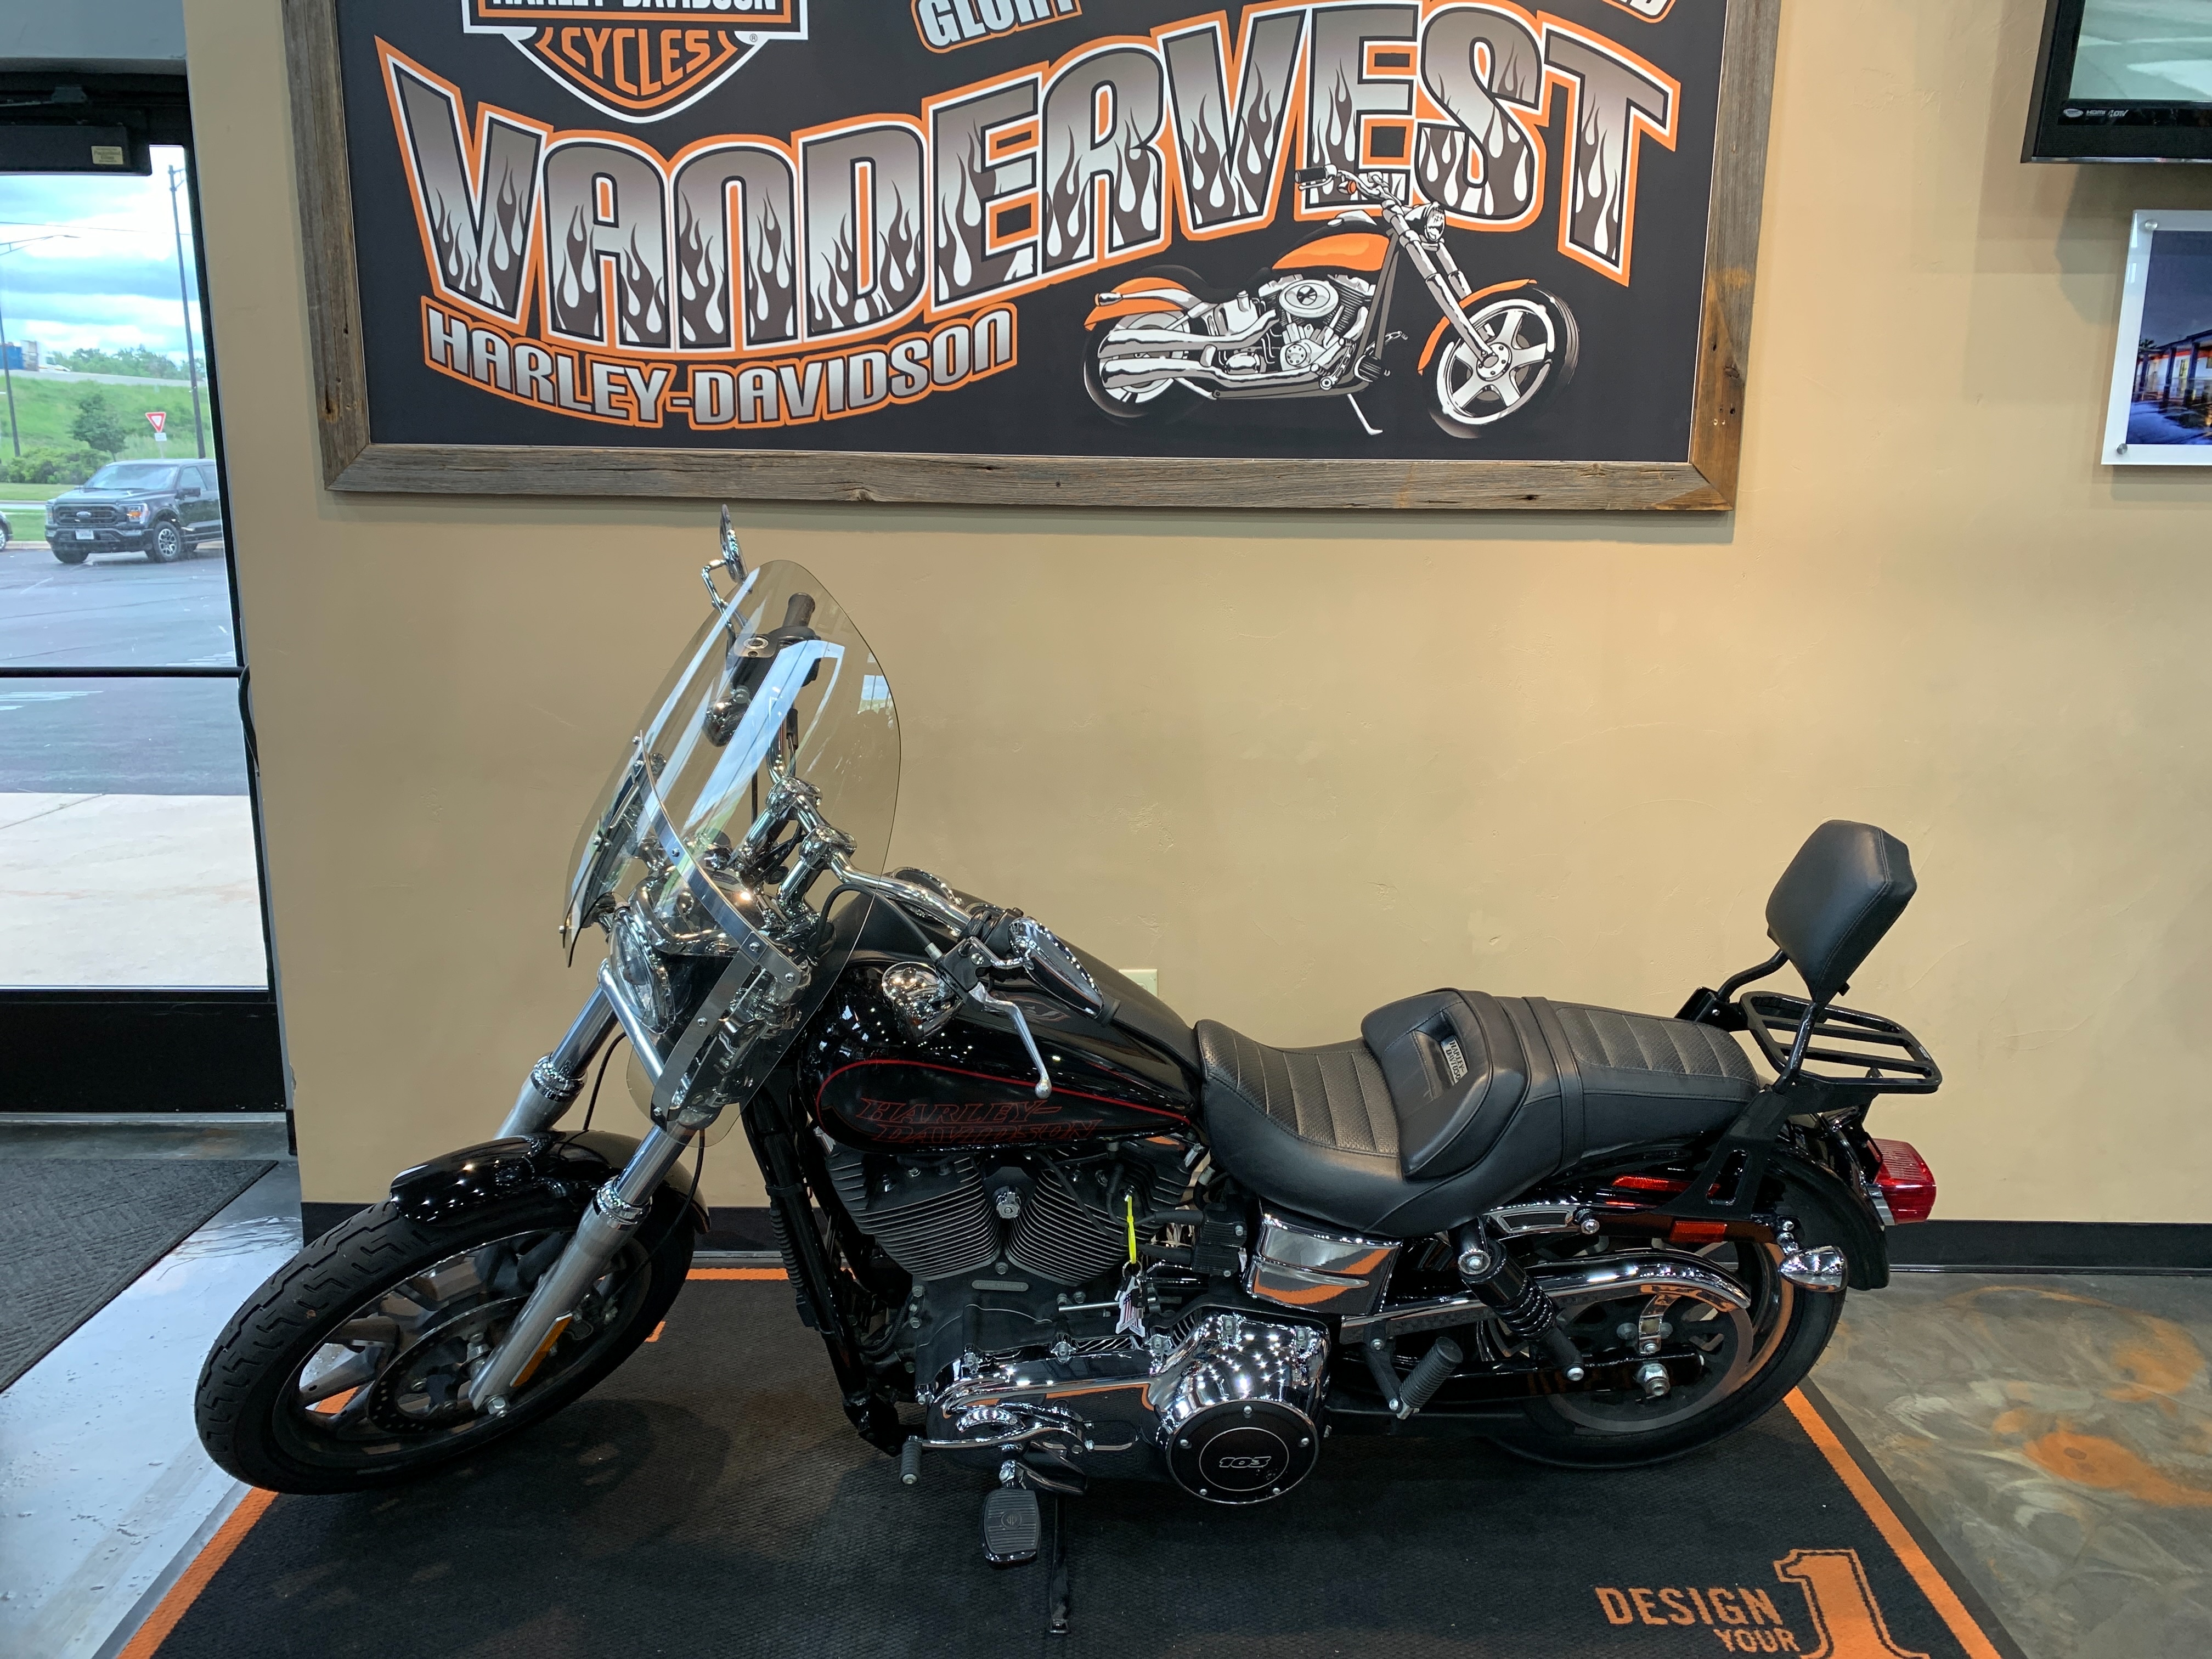 2014 Harley-Davidson Dyna Low Rider at Vandervest Harley-Davidson, Green Bay, WI 54303